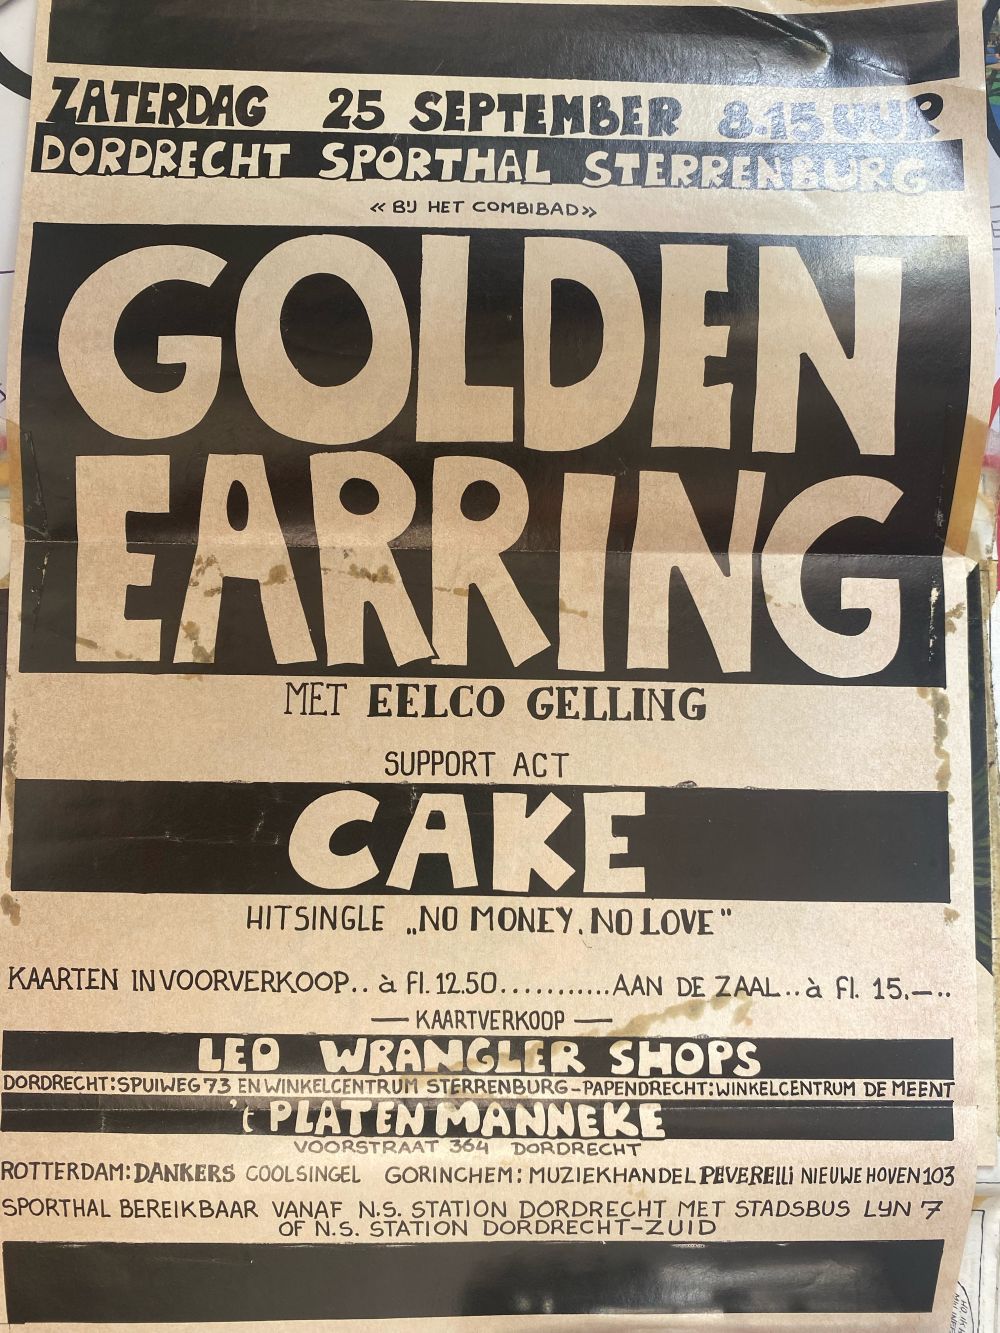 Golden Earring show poster September 25 1976 Dordrecht - Sterrenburg Sporthal